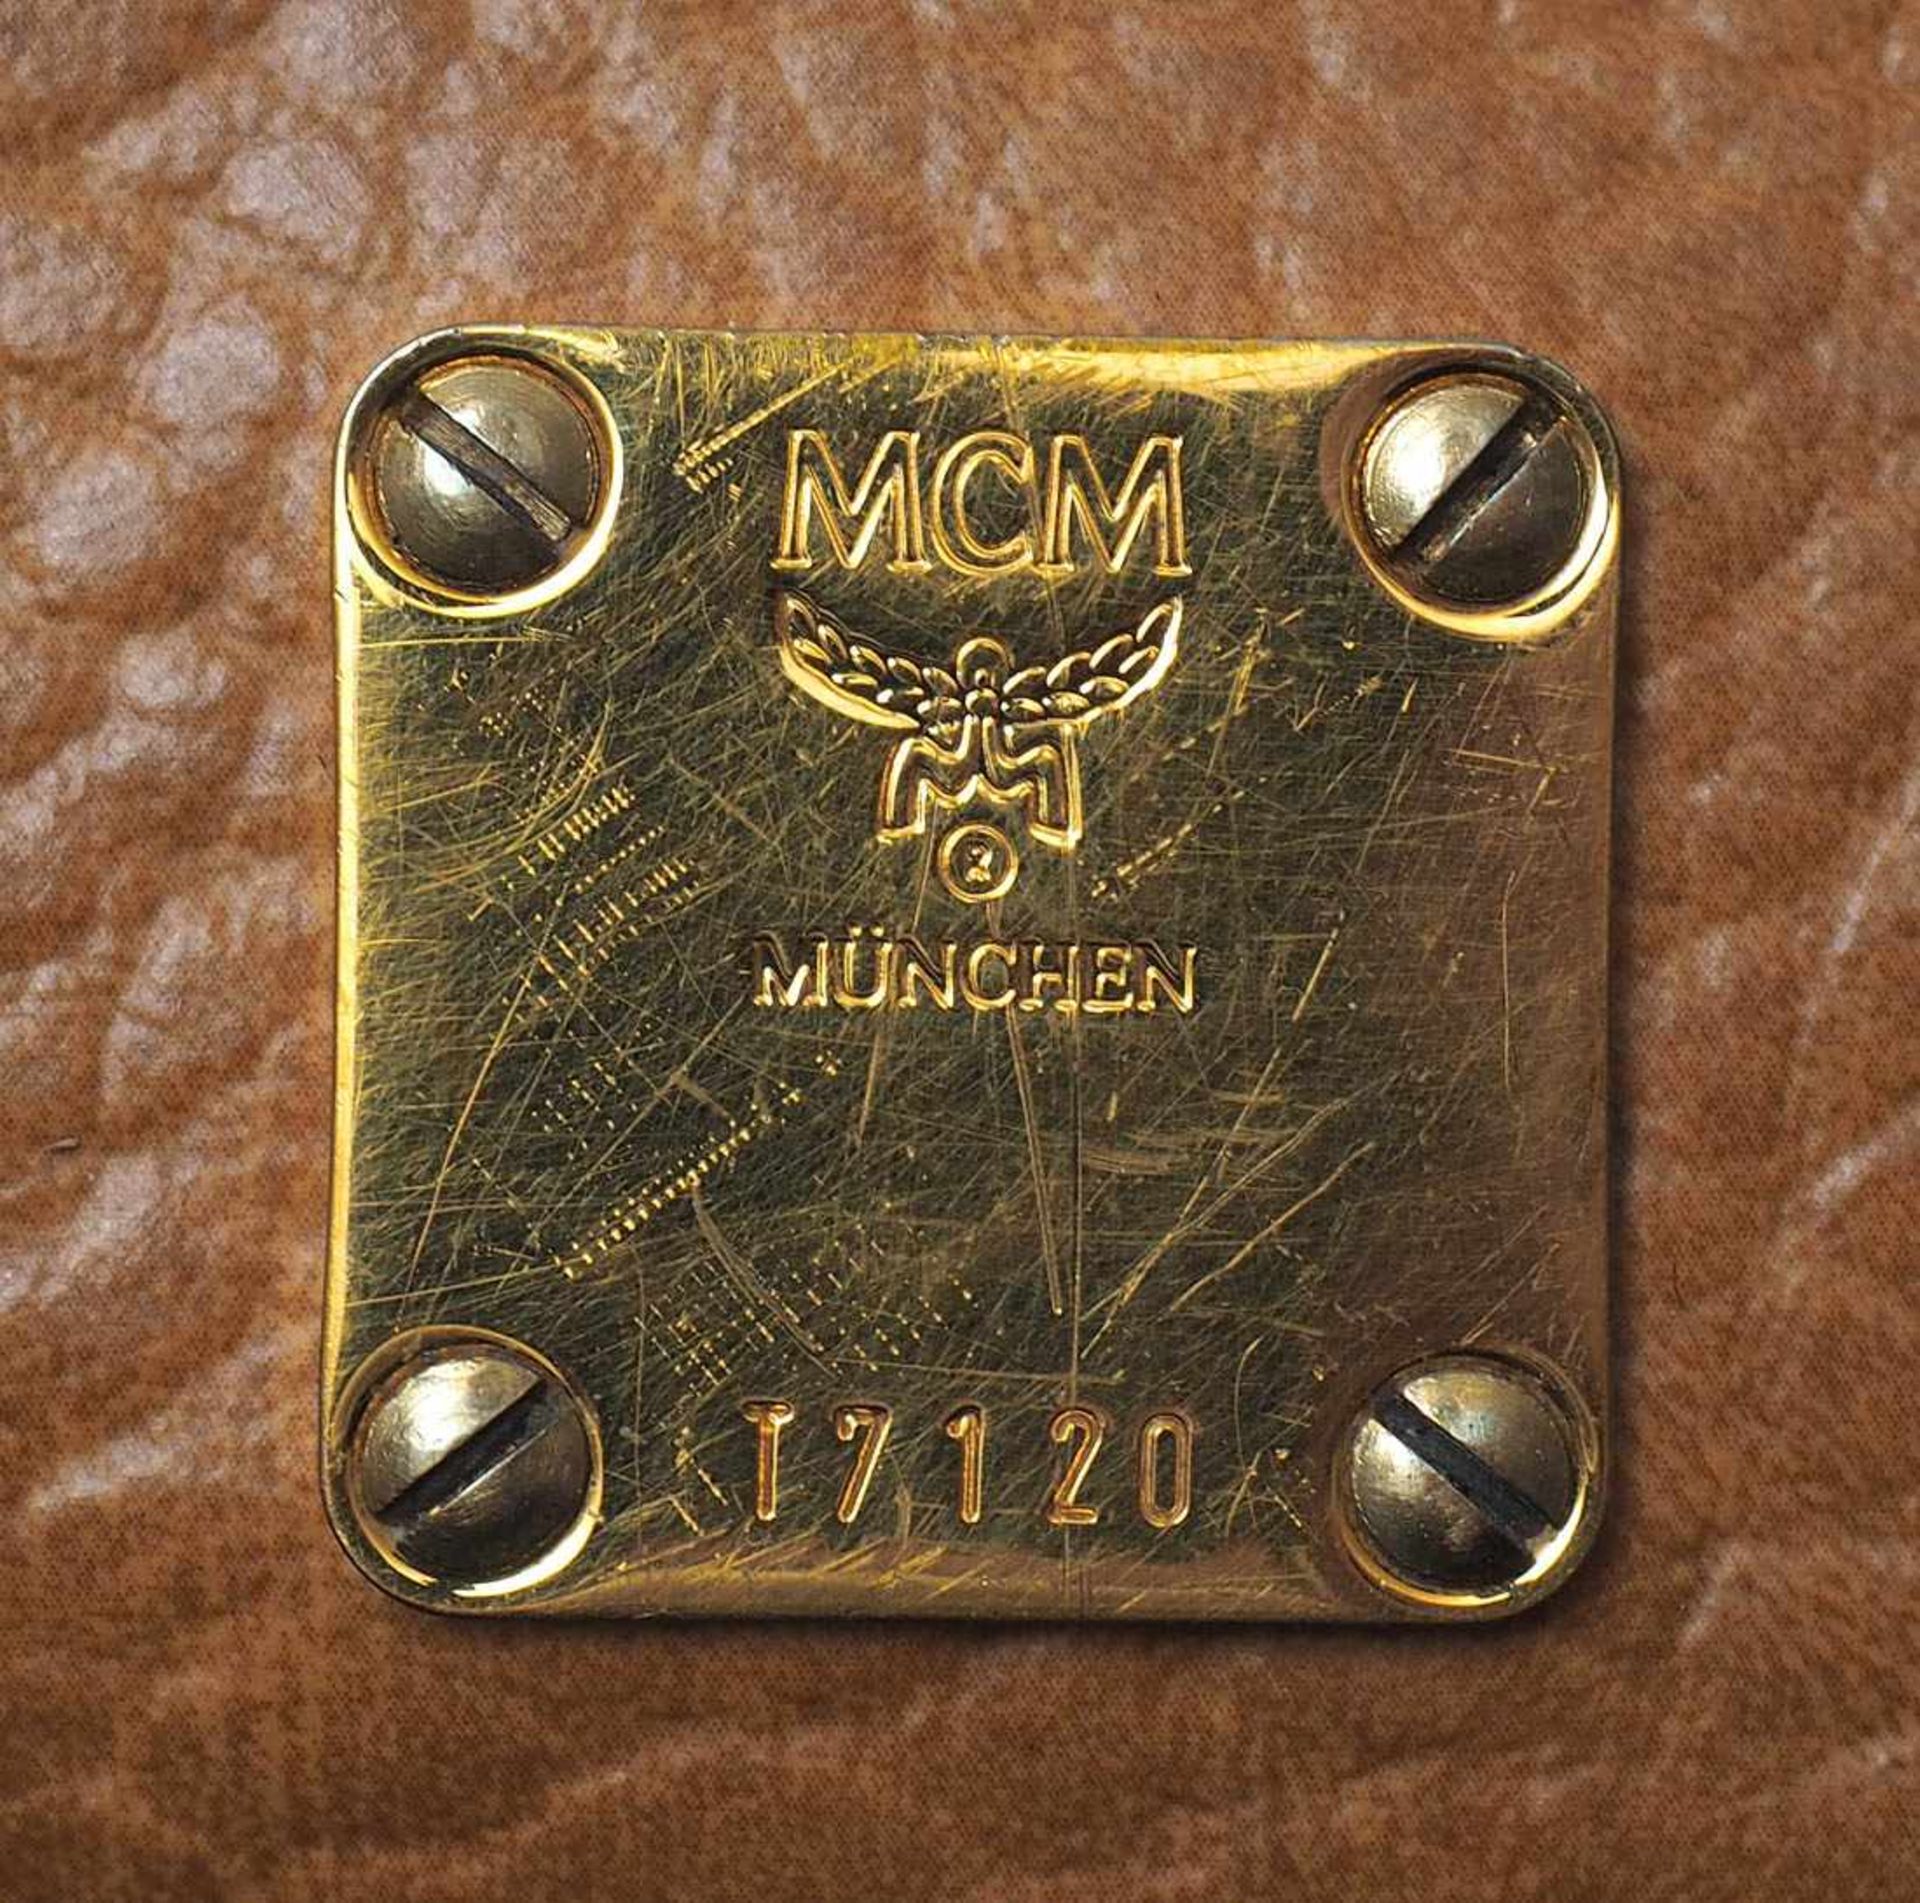 Handtasche, MCM Helles Leder, Beschläge aus vergoldetem Metall. Numeriert 17120. 25x31cm. Mit - Bild 7 aus 8